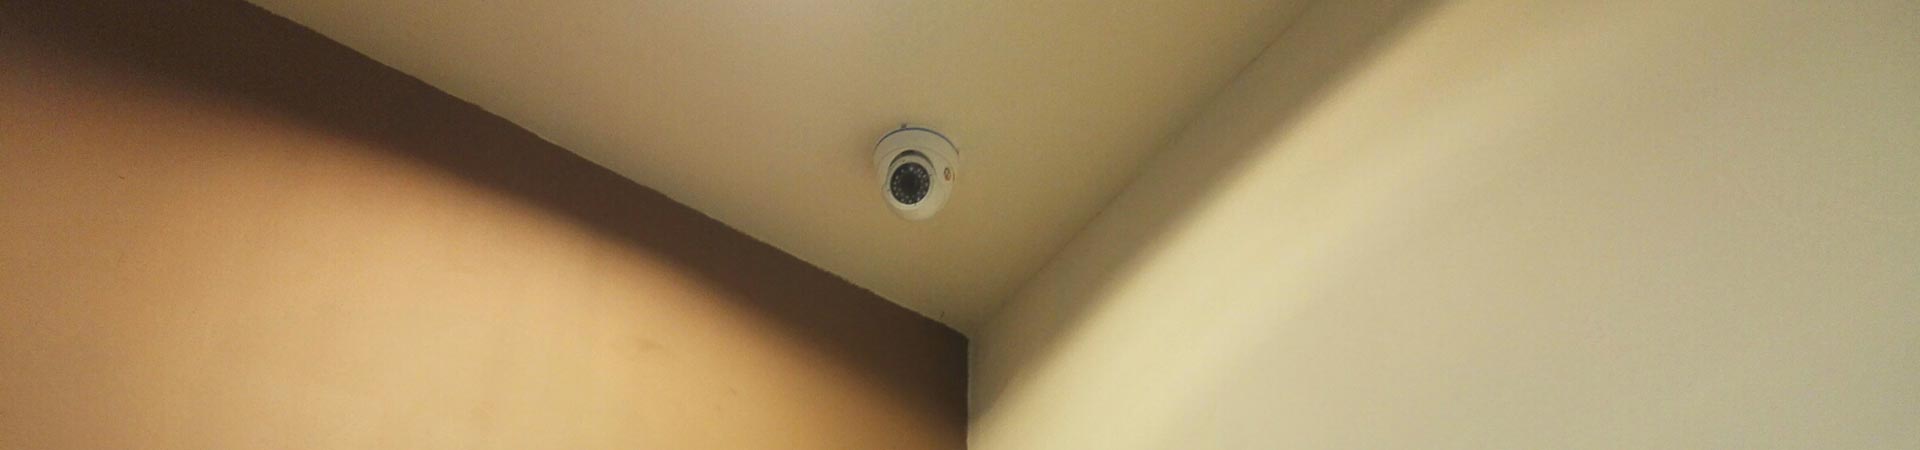 Установка видеонаблюдения для квартир